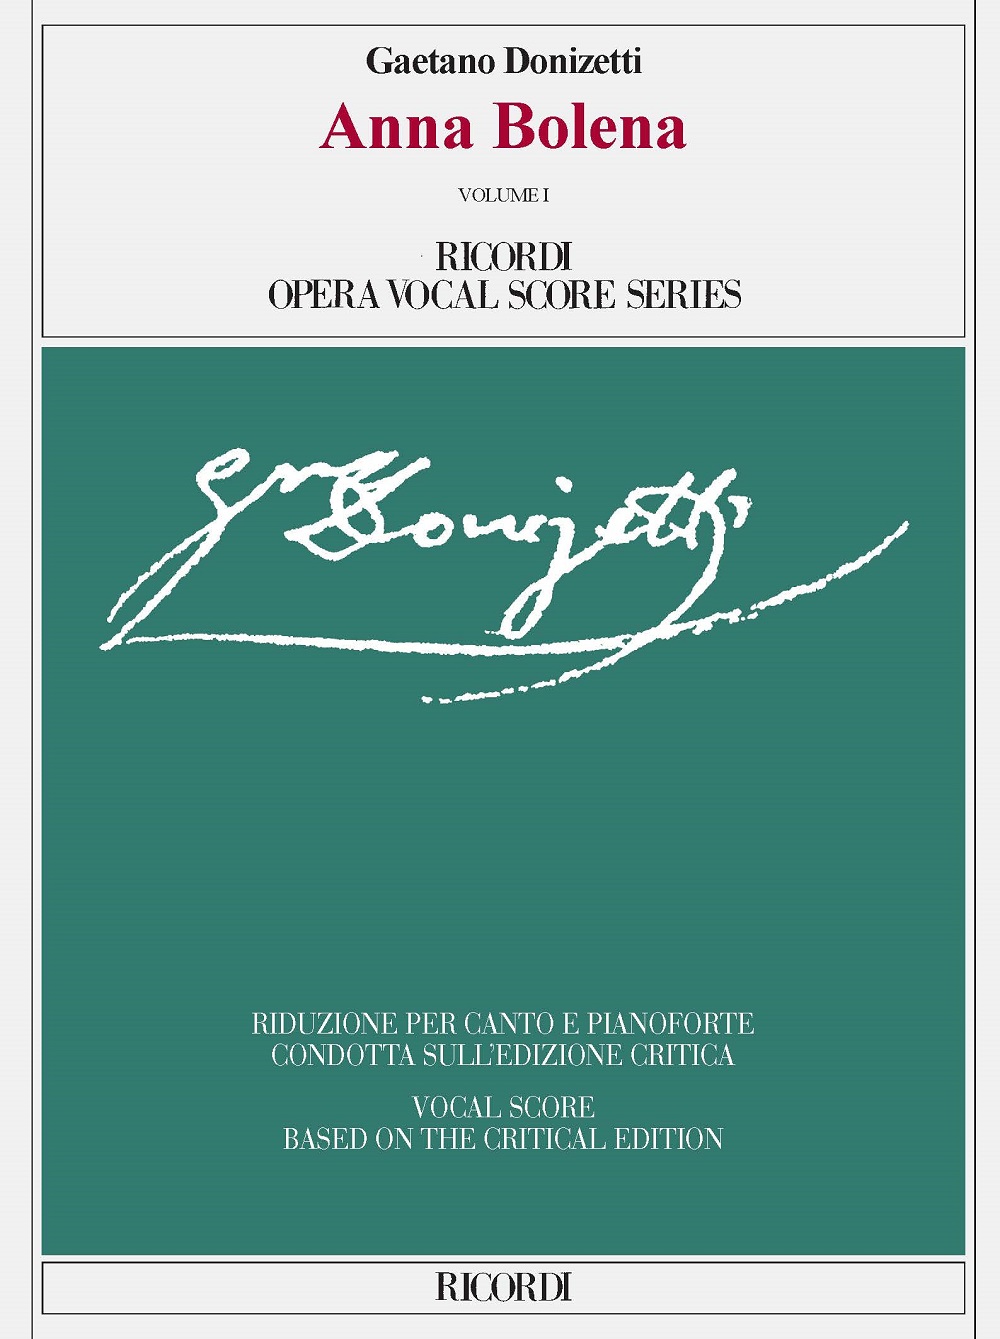 Gaetano Donizetti: Anna Bolena Volume I and Volume II: Voice